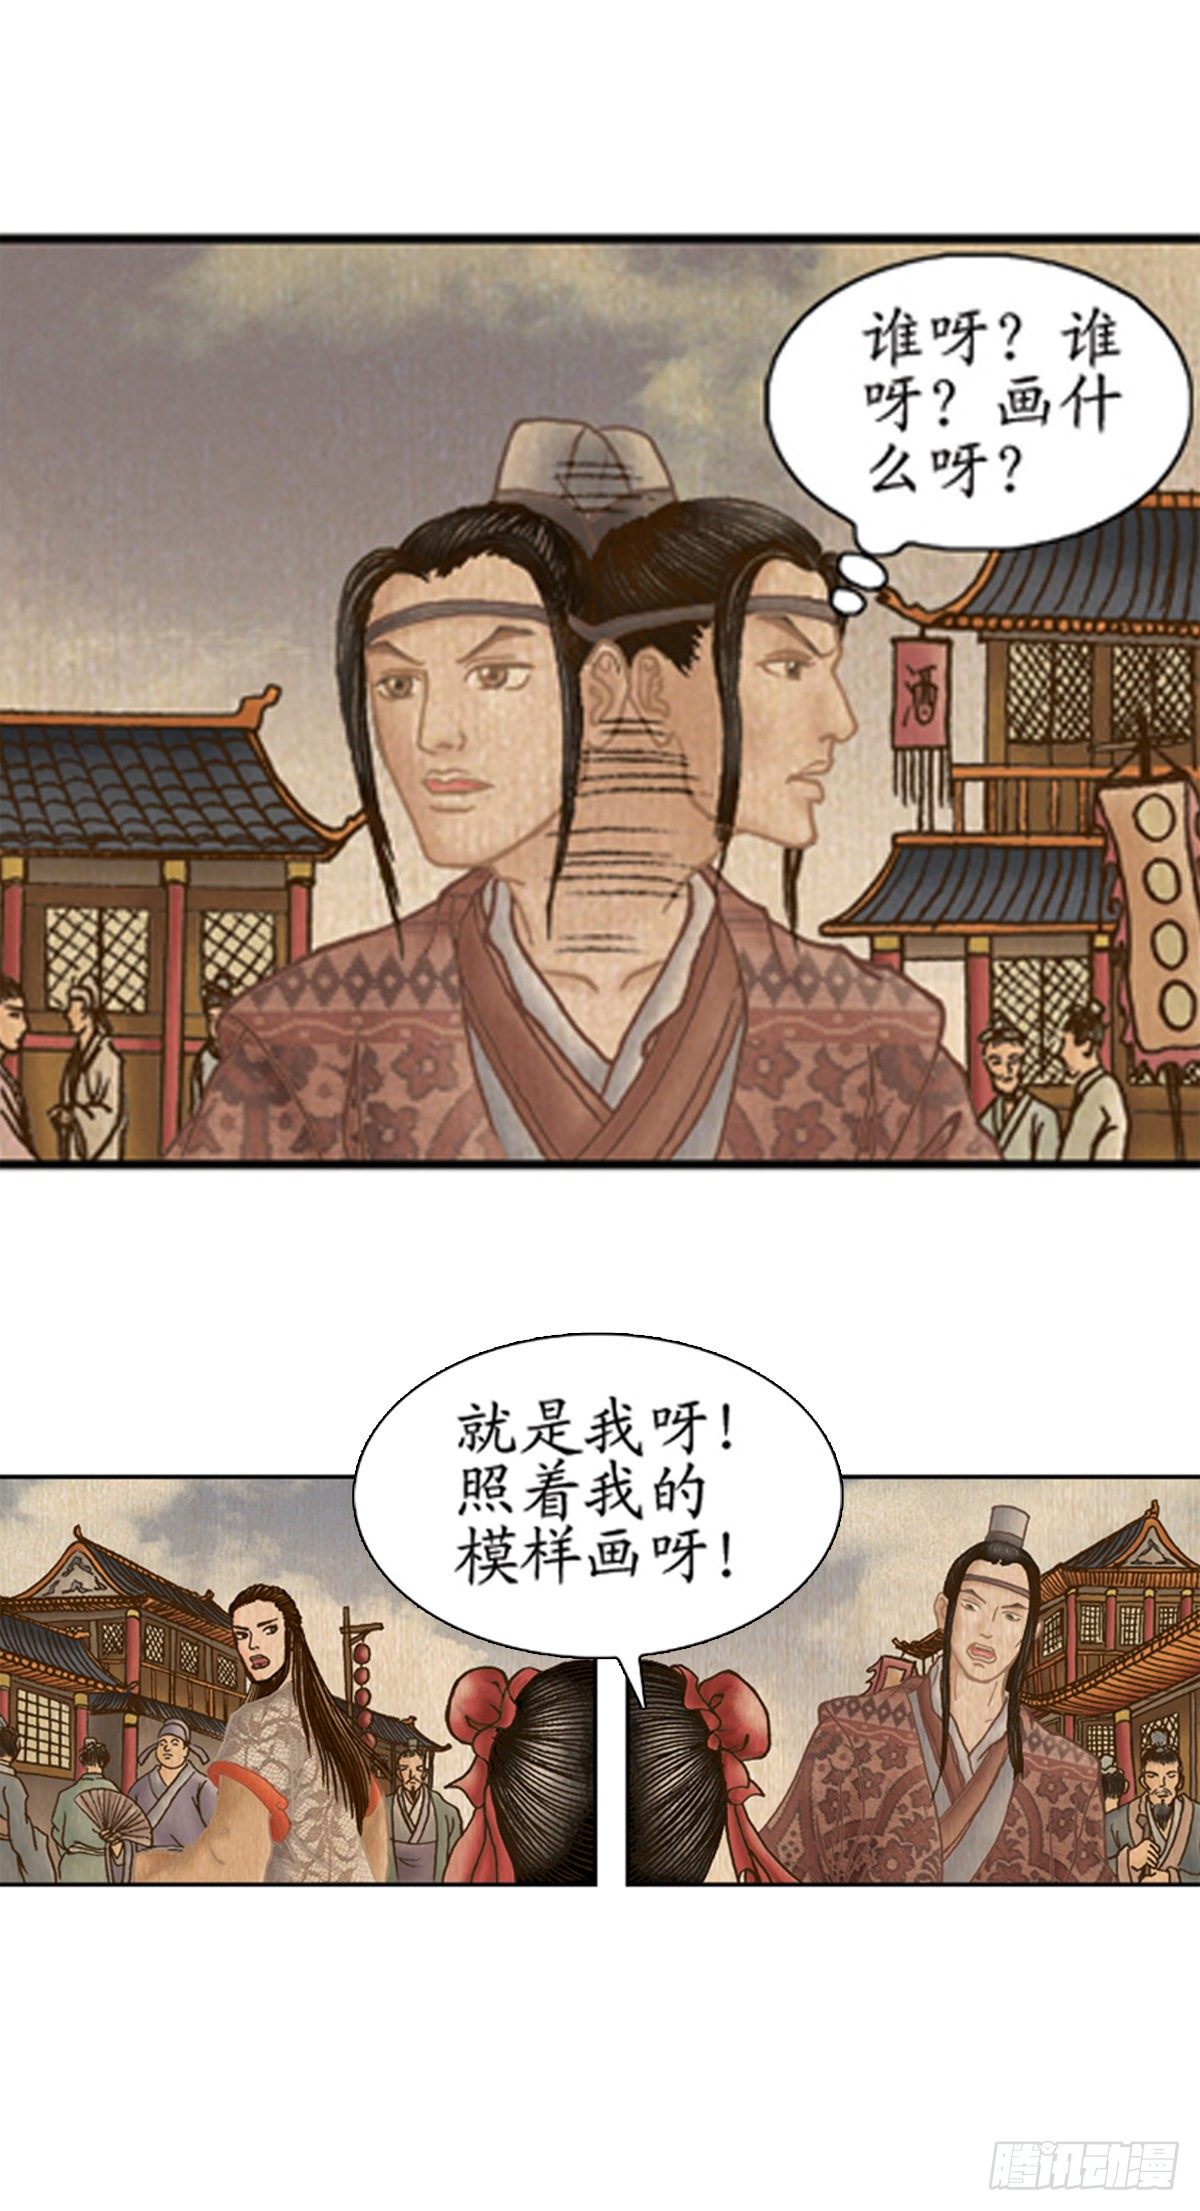 經典傳承—中國好故事 - 老北京的傳說 2 - 2